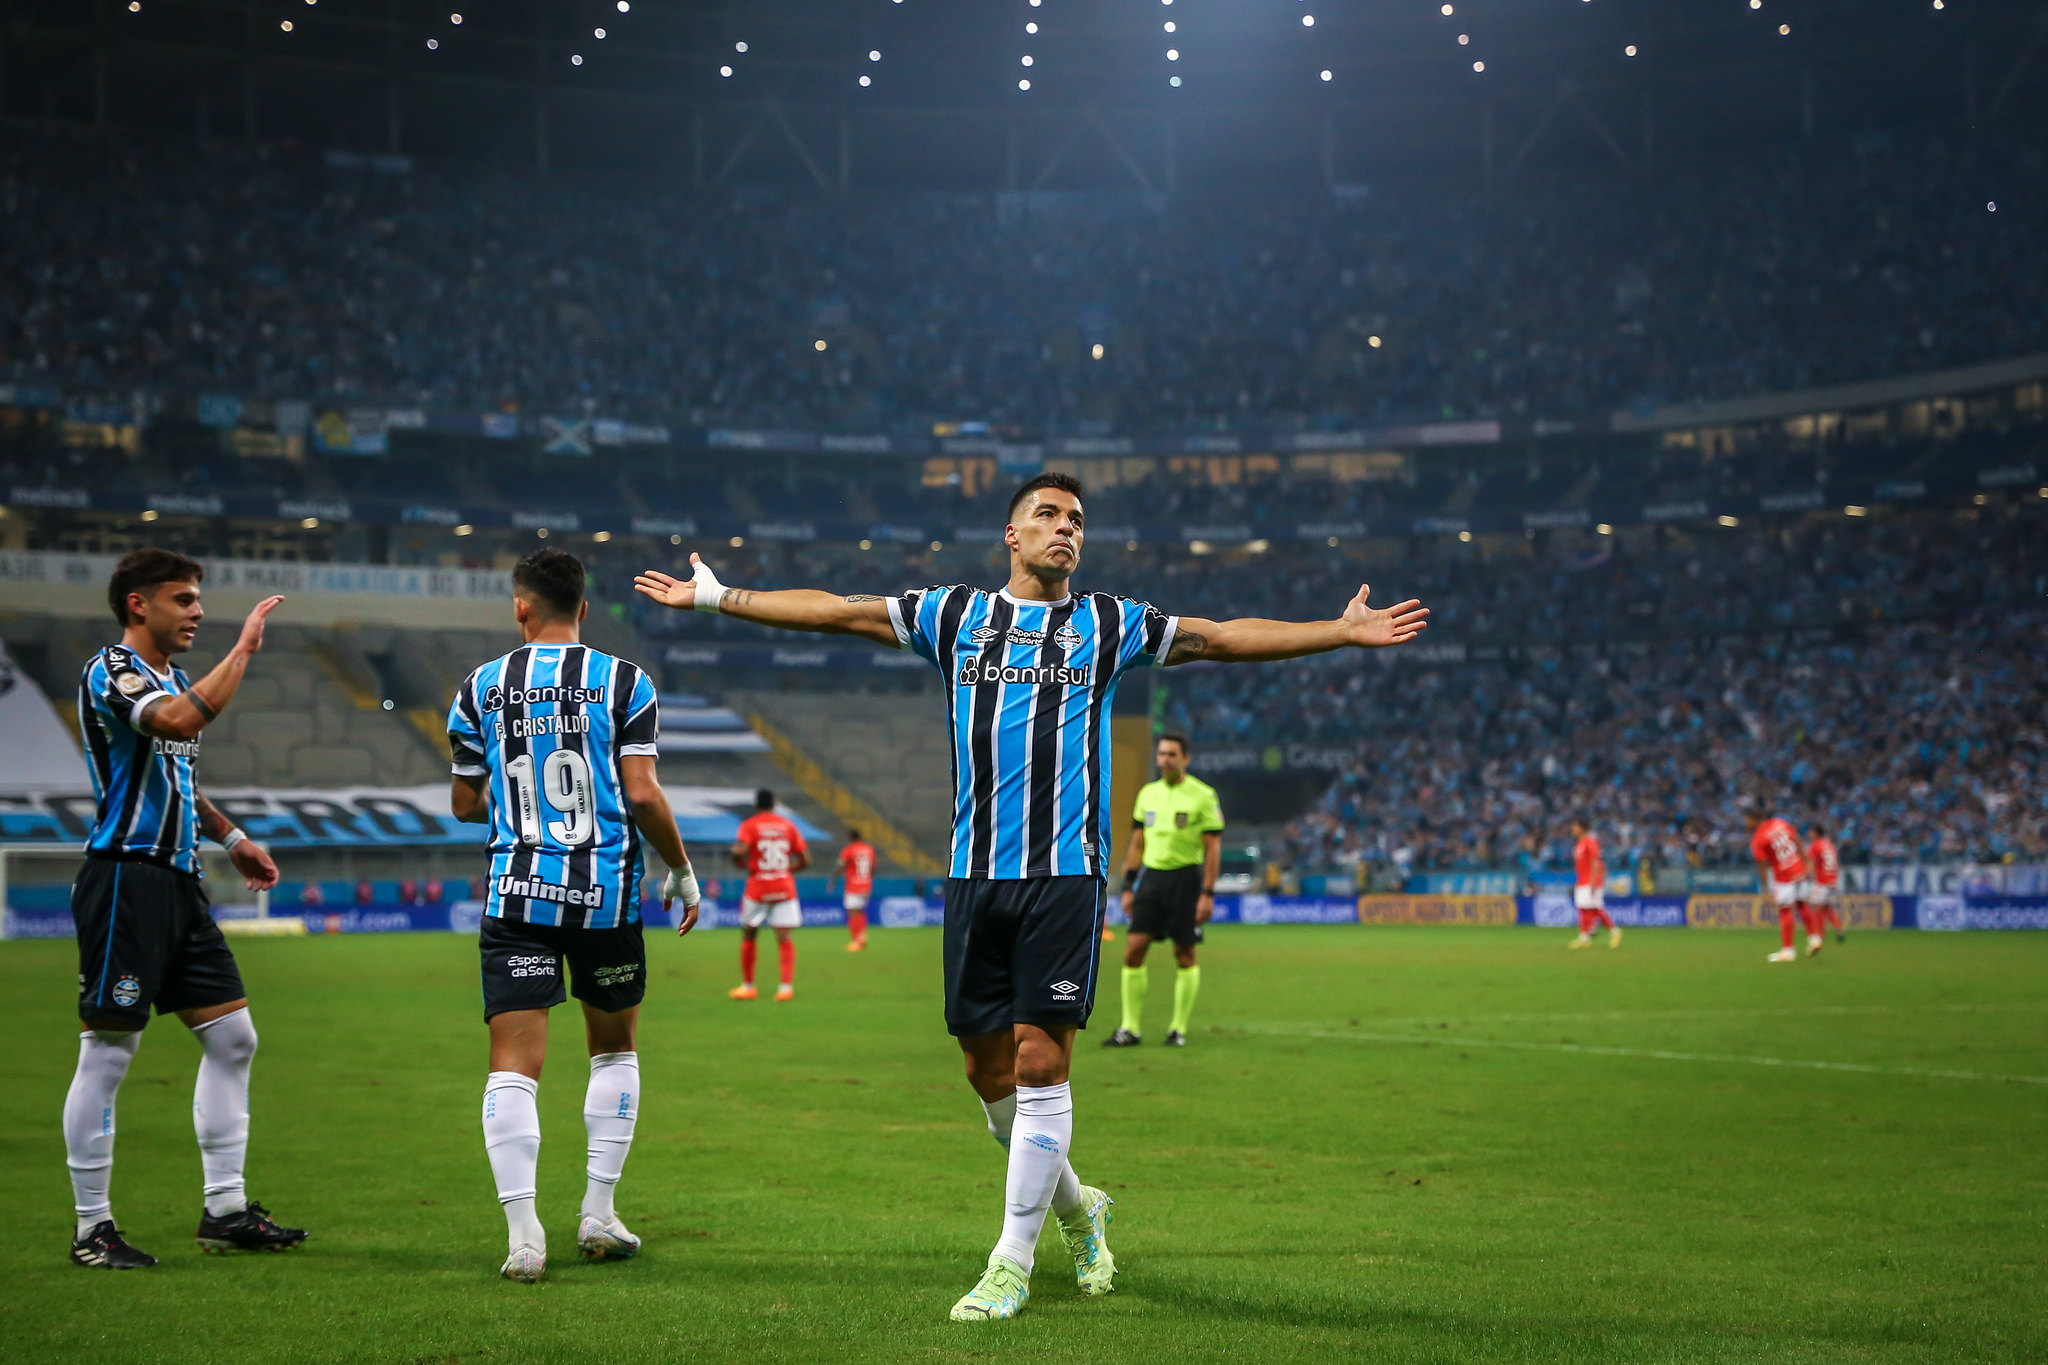 Suárez sai como um dos gigantes da história do Grêmio - Foto: Divulgação/Grêmio